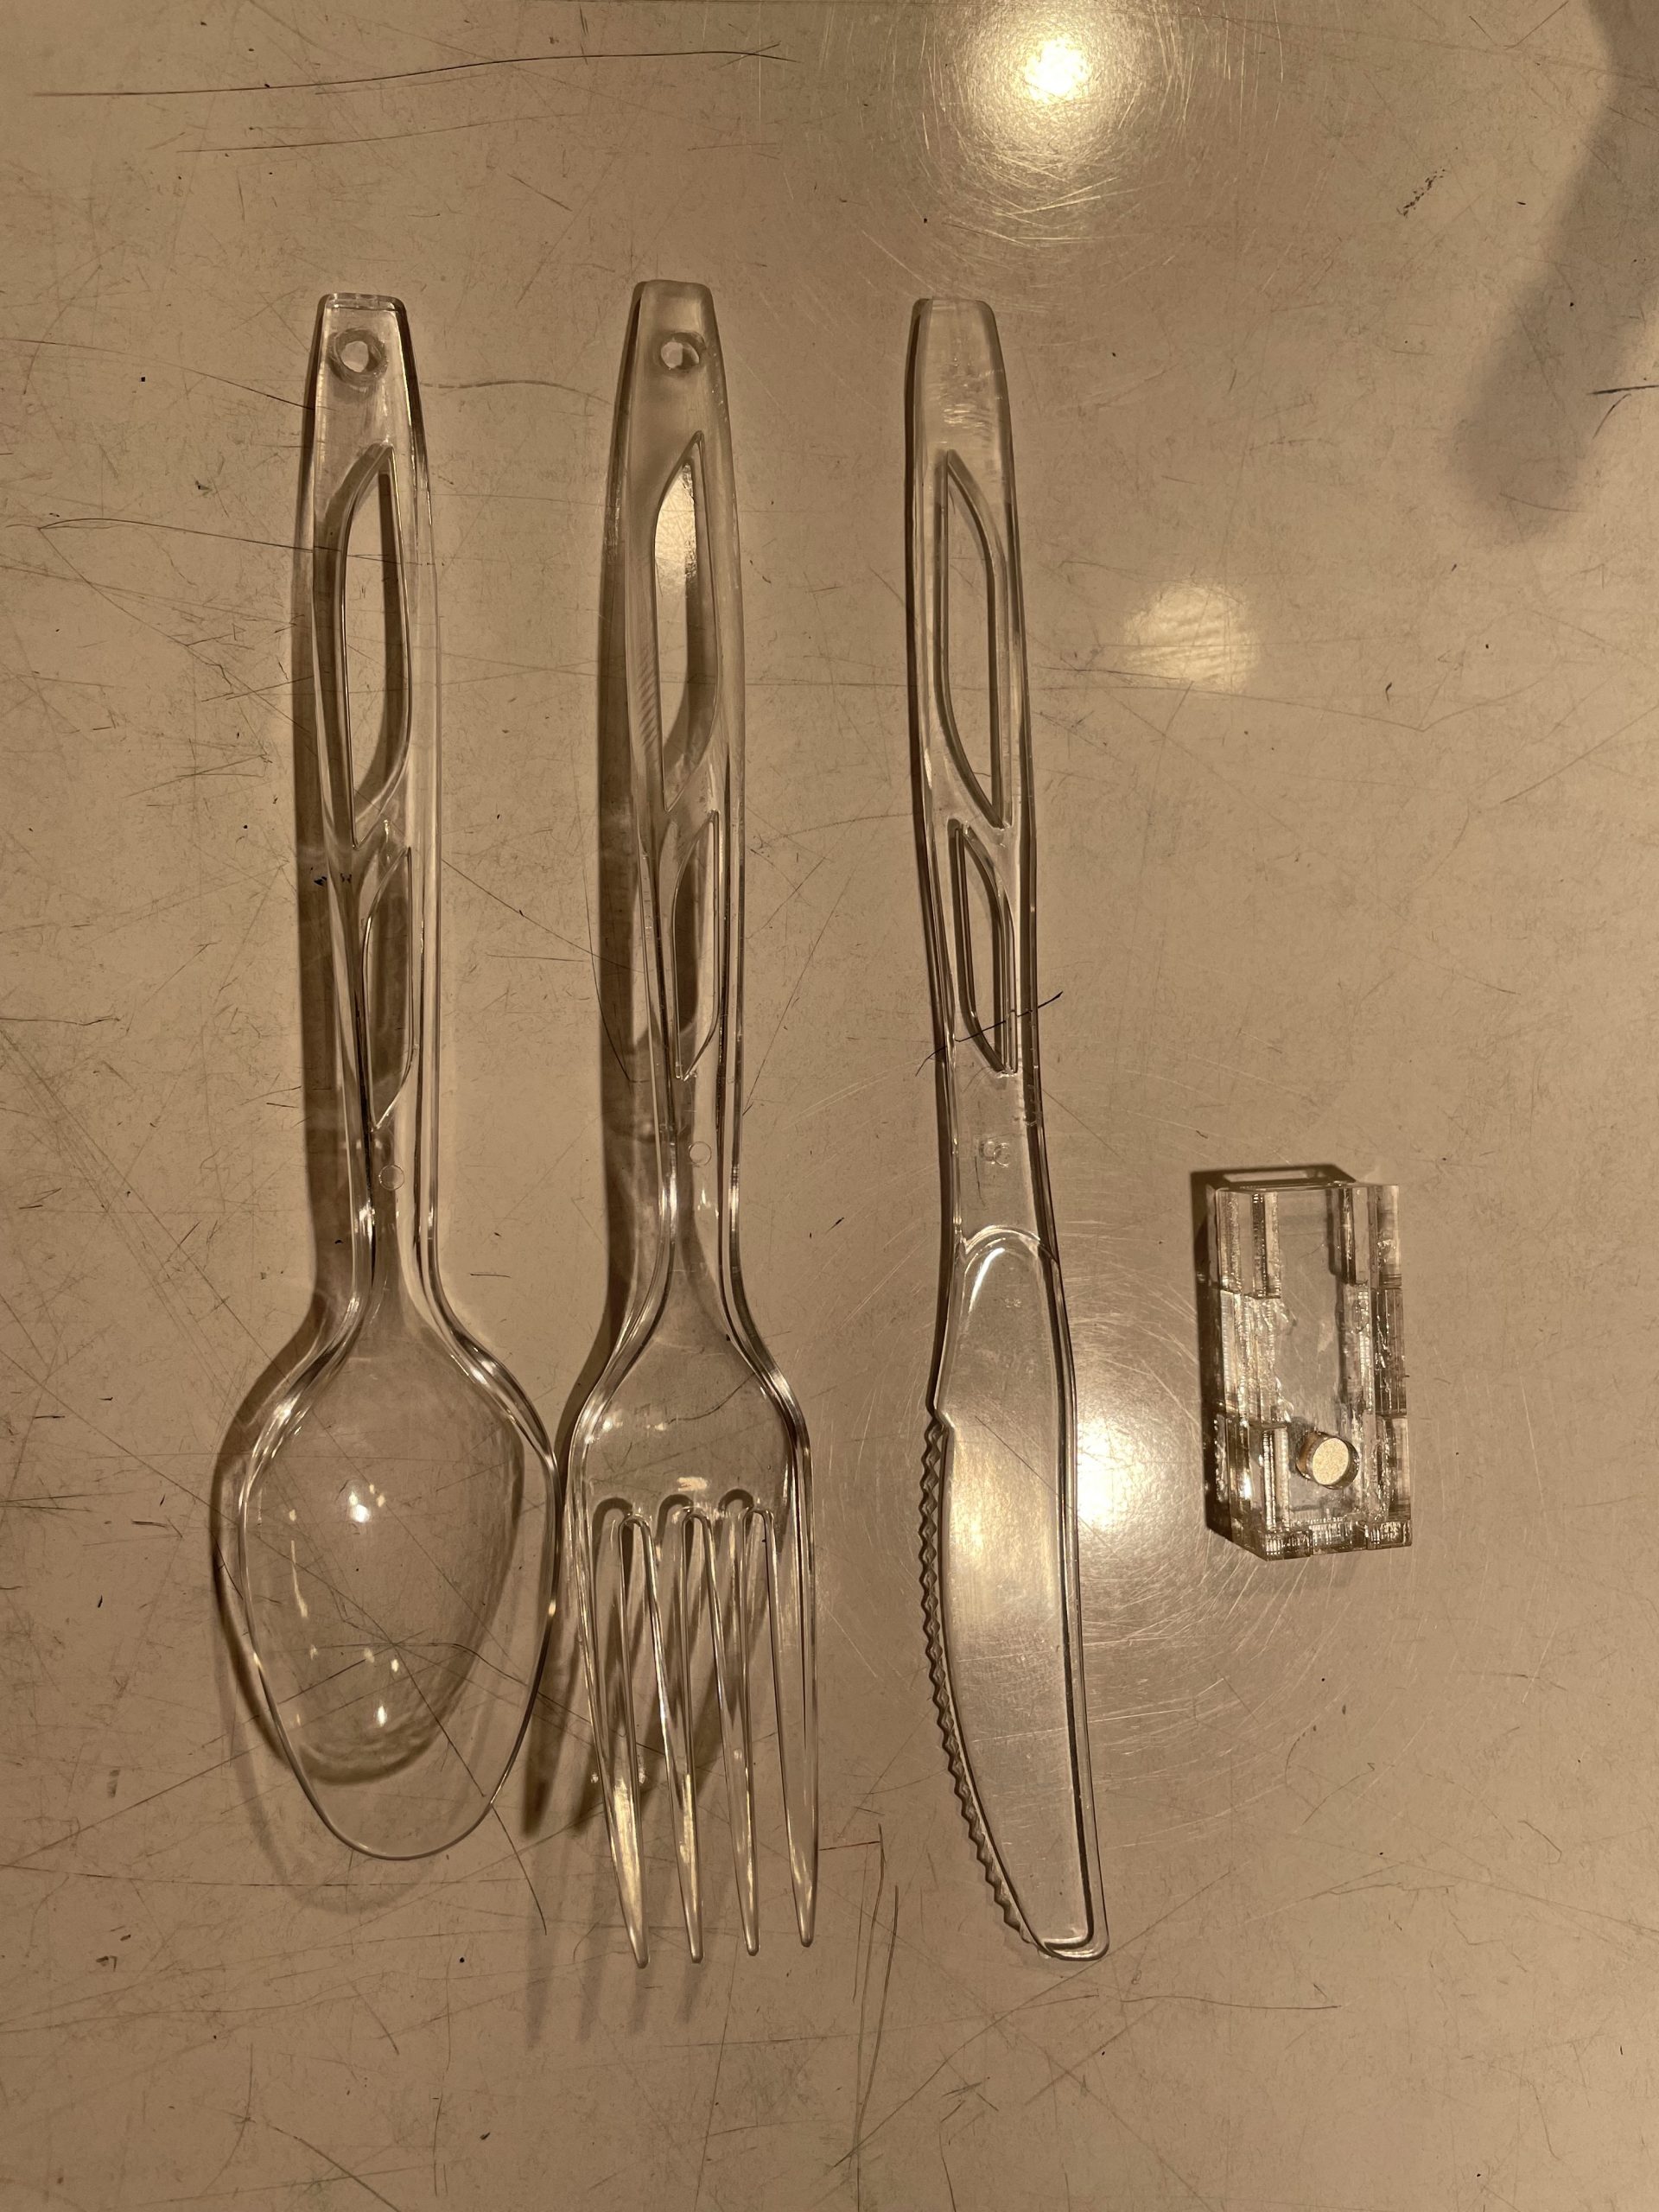 The prototype of the utensil holder